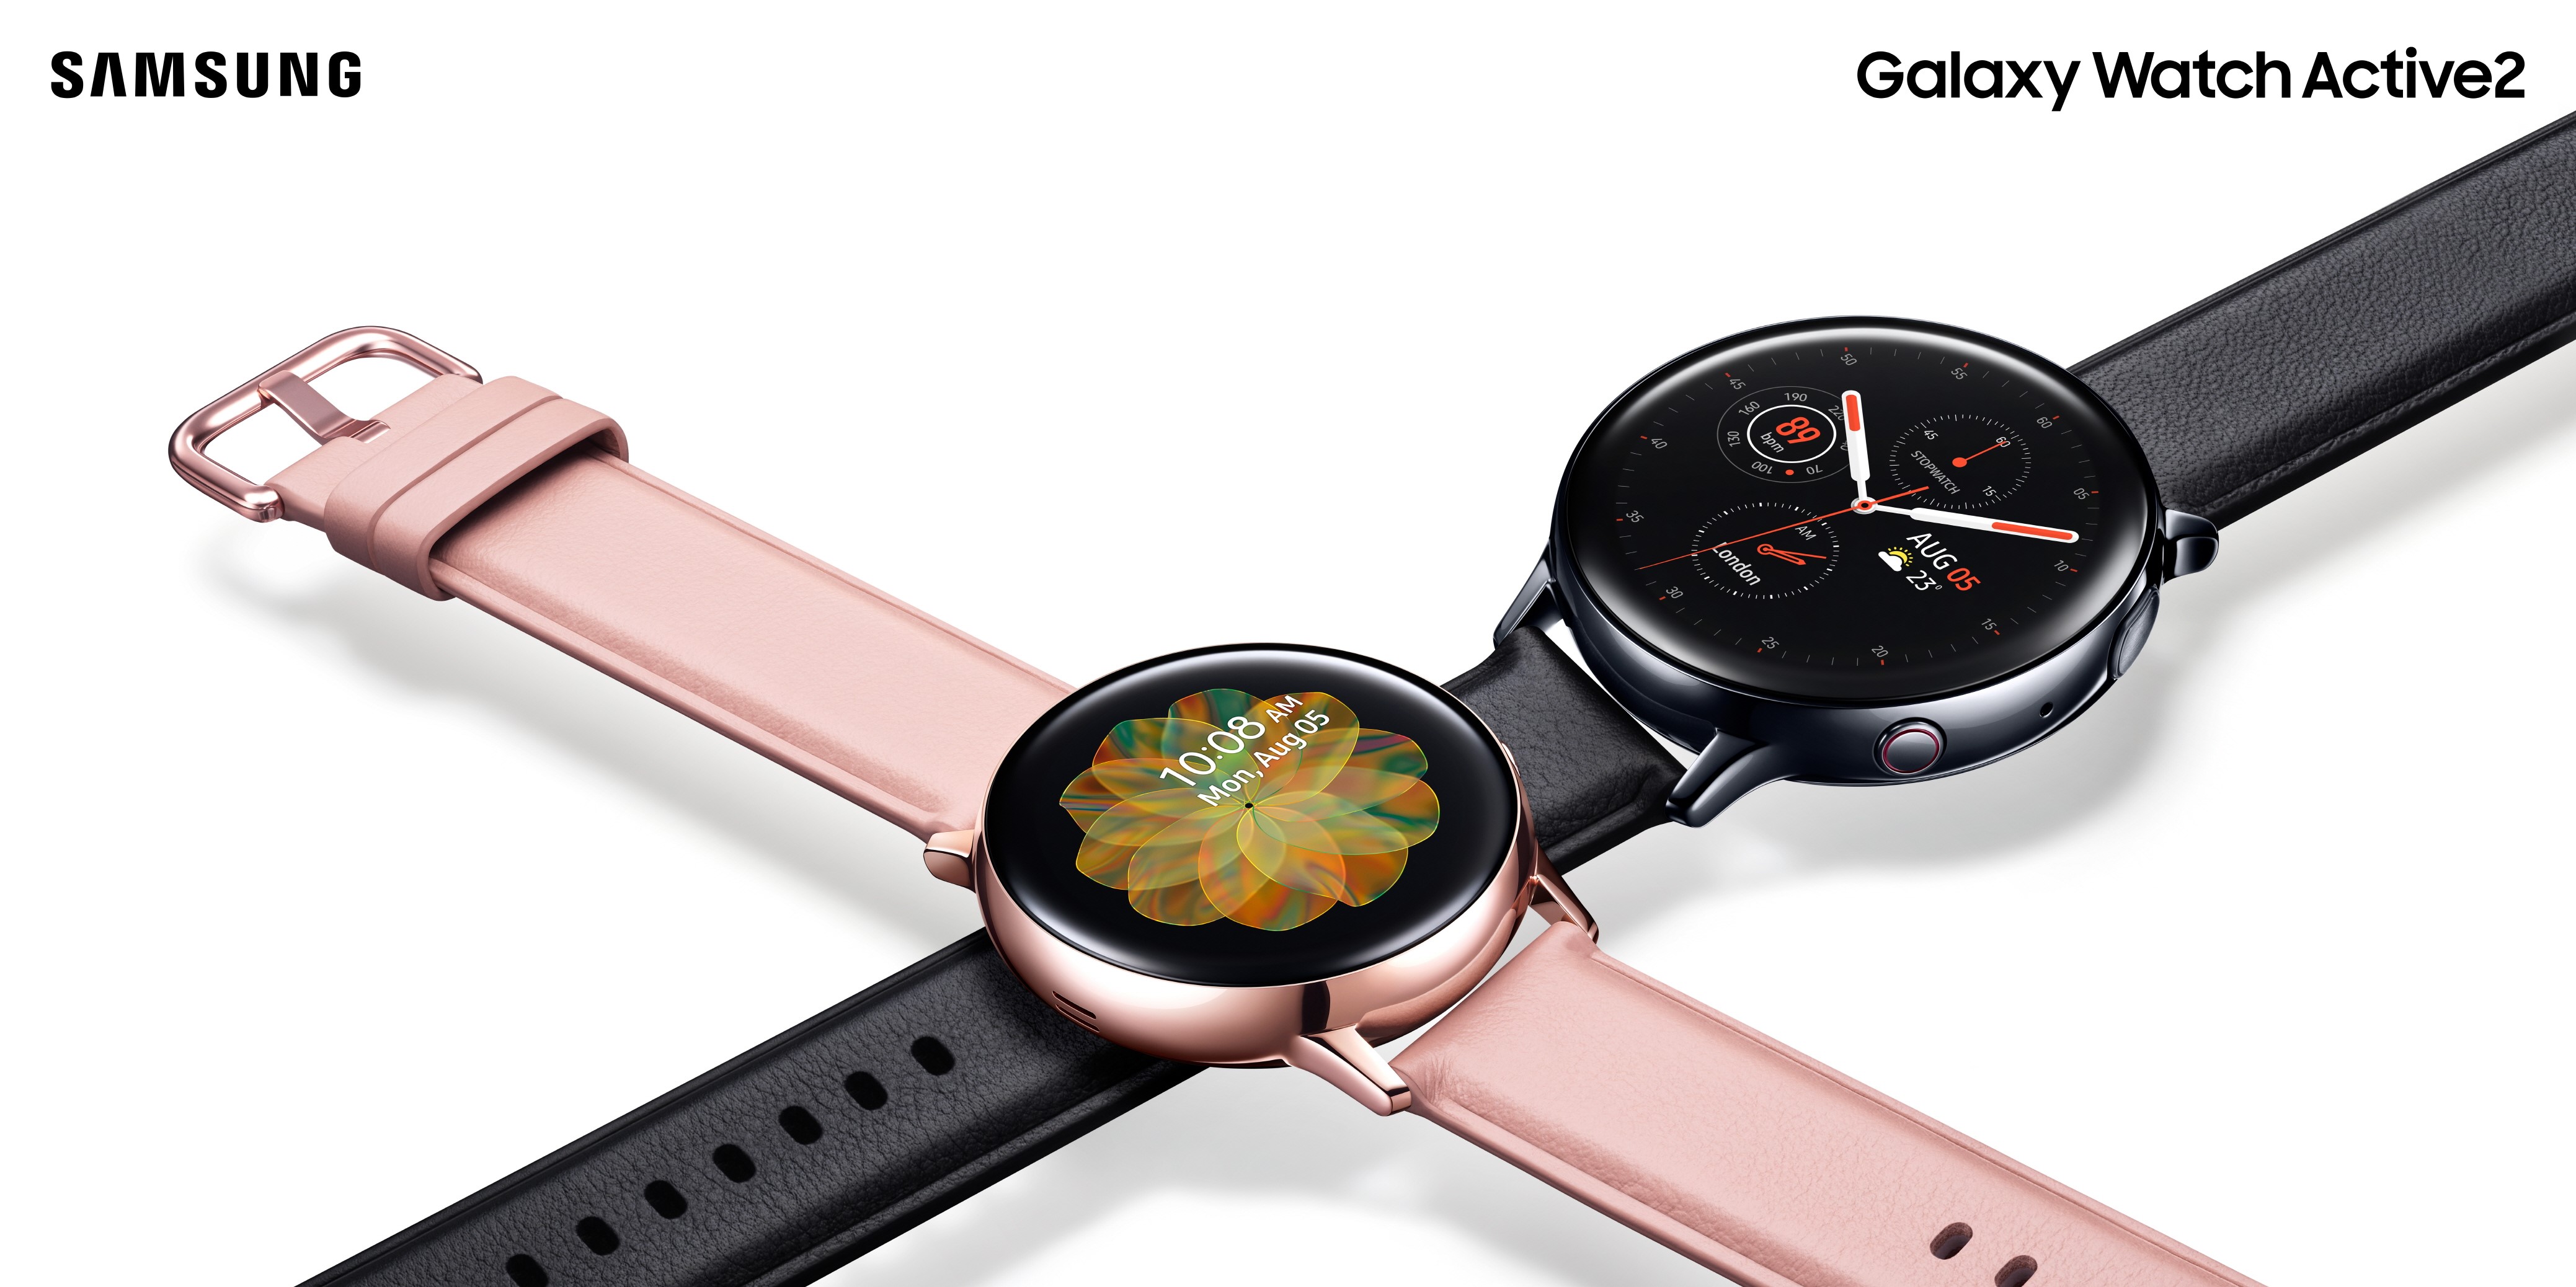 【快訊報報】自訂今天的搭配造型！Samsung Galaxy Watch Active 2 搭載 My Style 色彩擷取 任選錶面搭配專屬風格 - ACTIVE2 - 科技狗 3C DOG